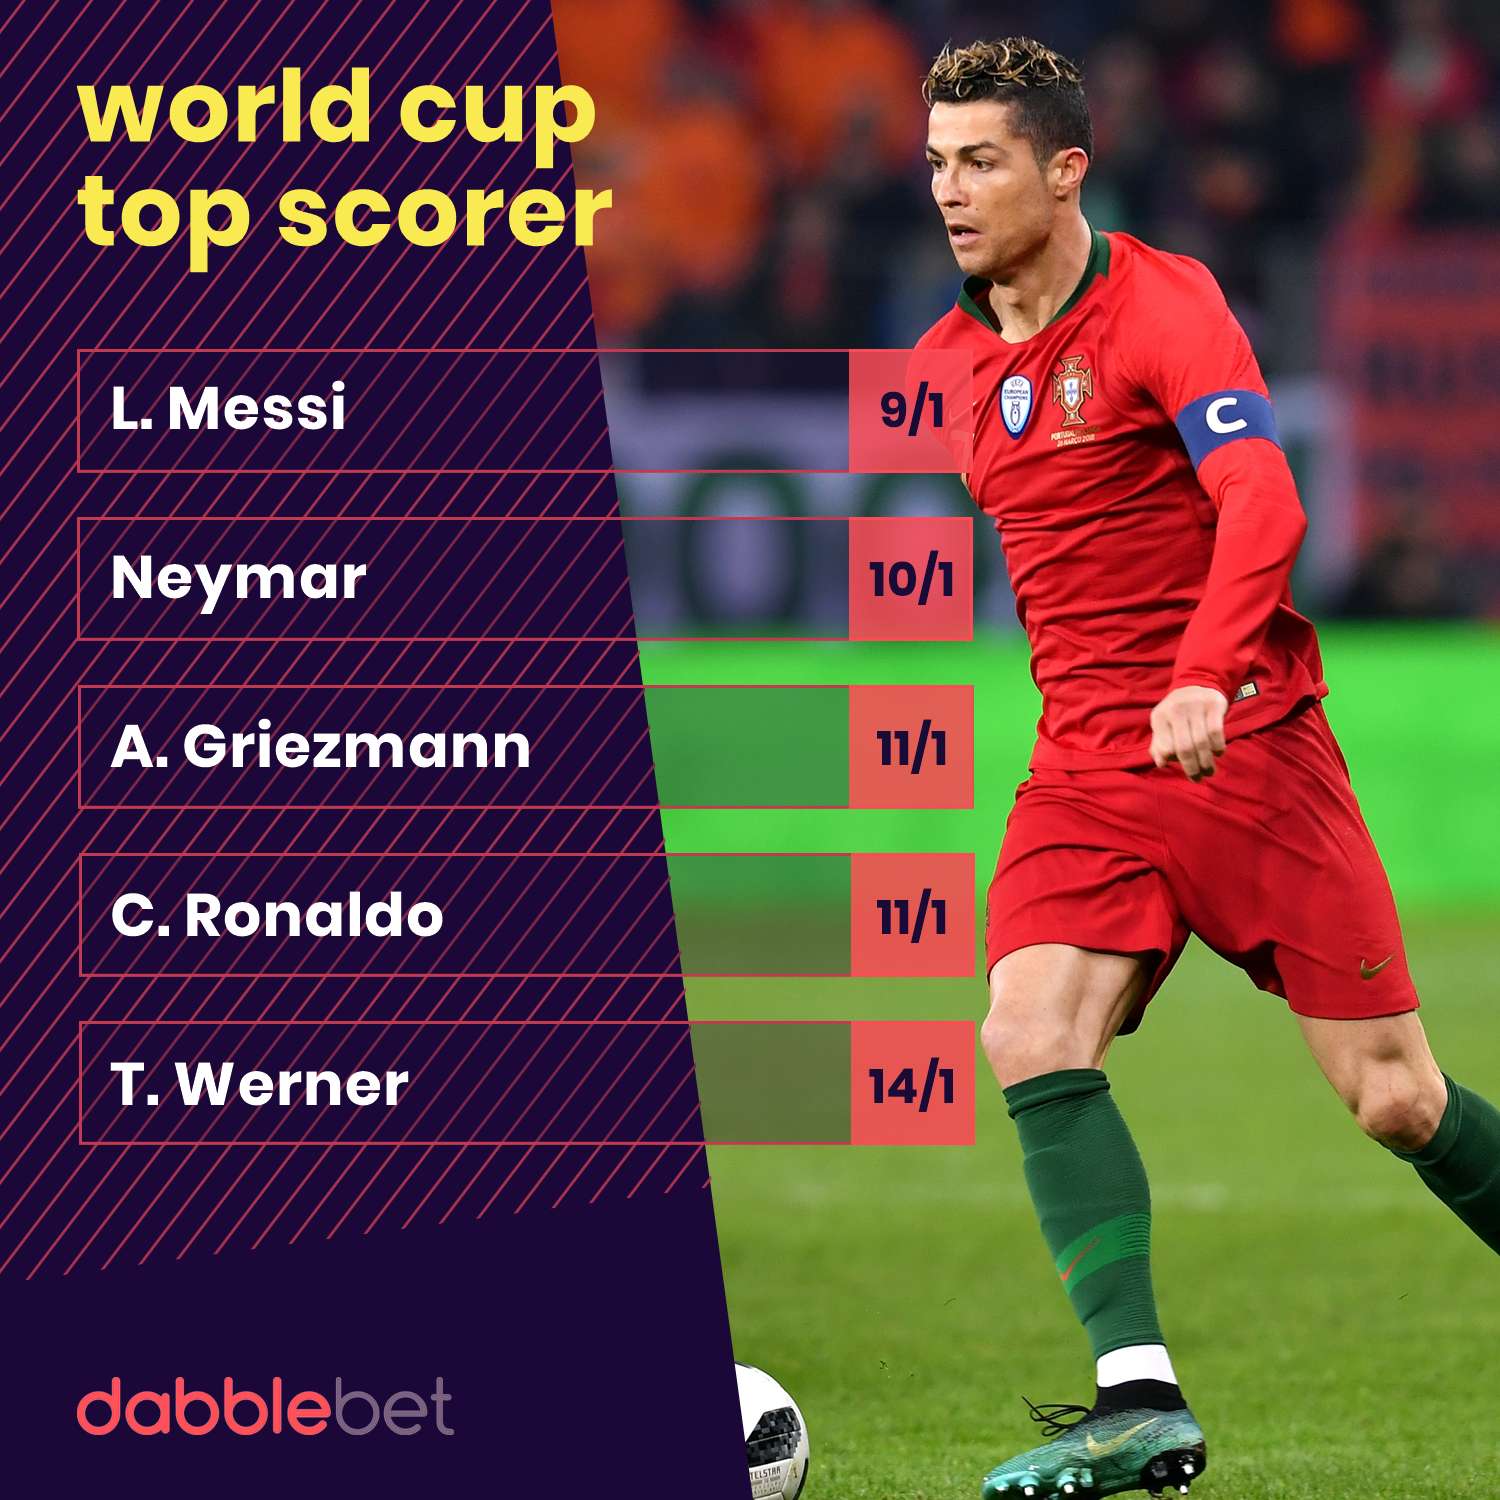 World Cup top scorer odds from dabblebet